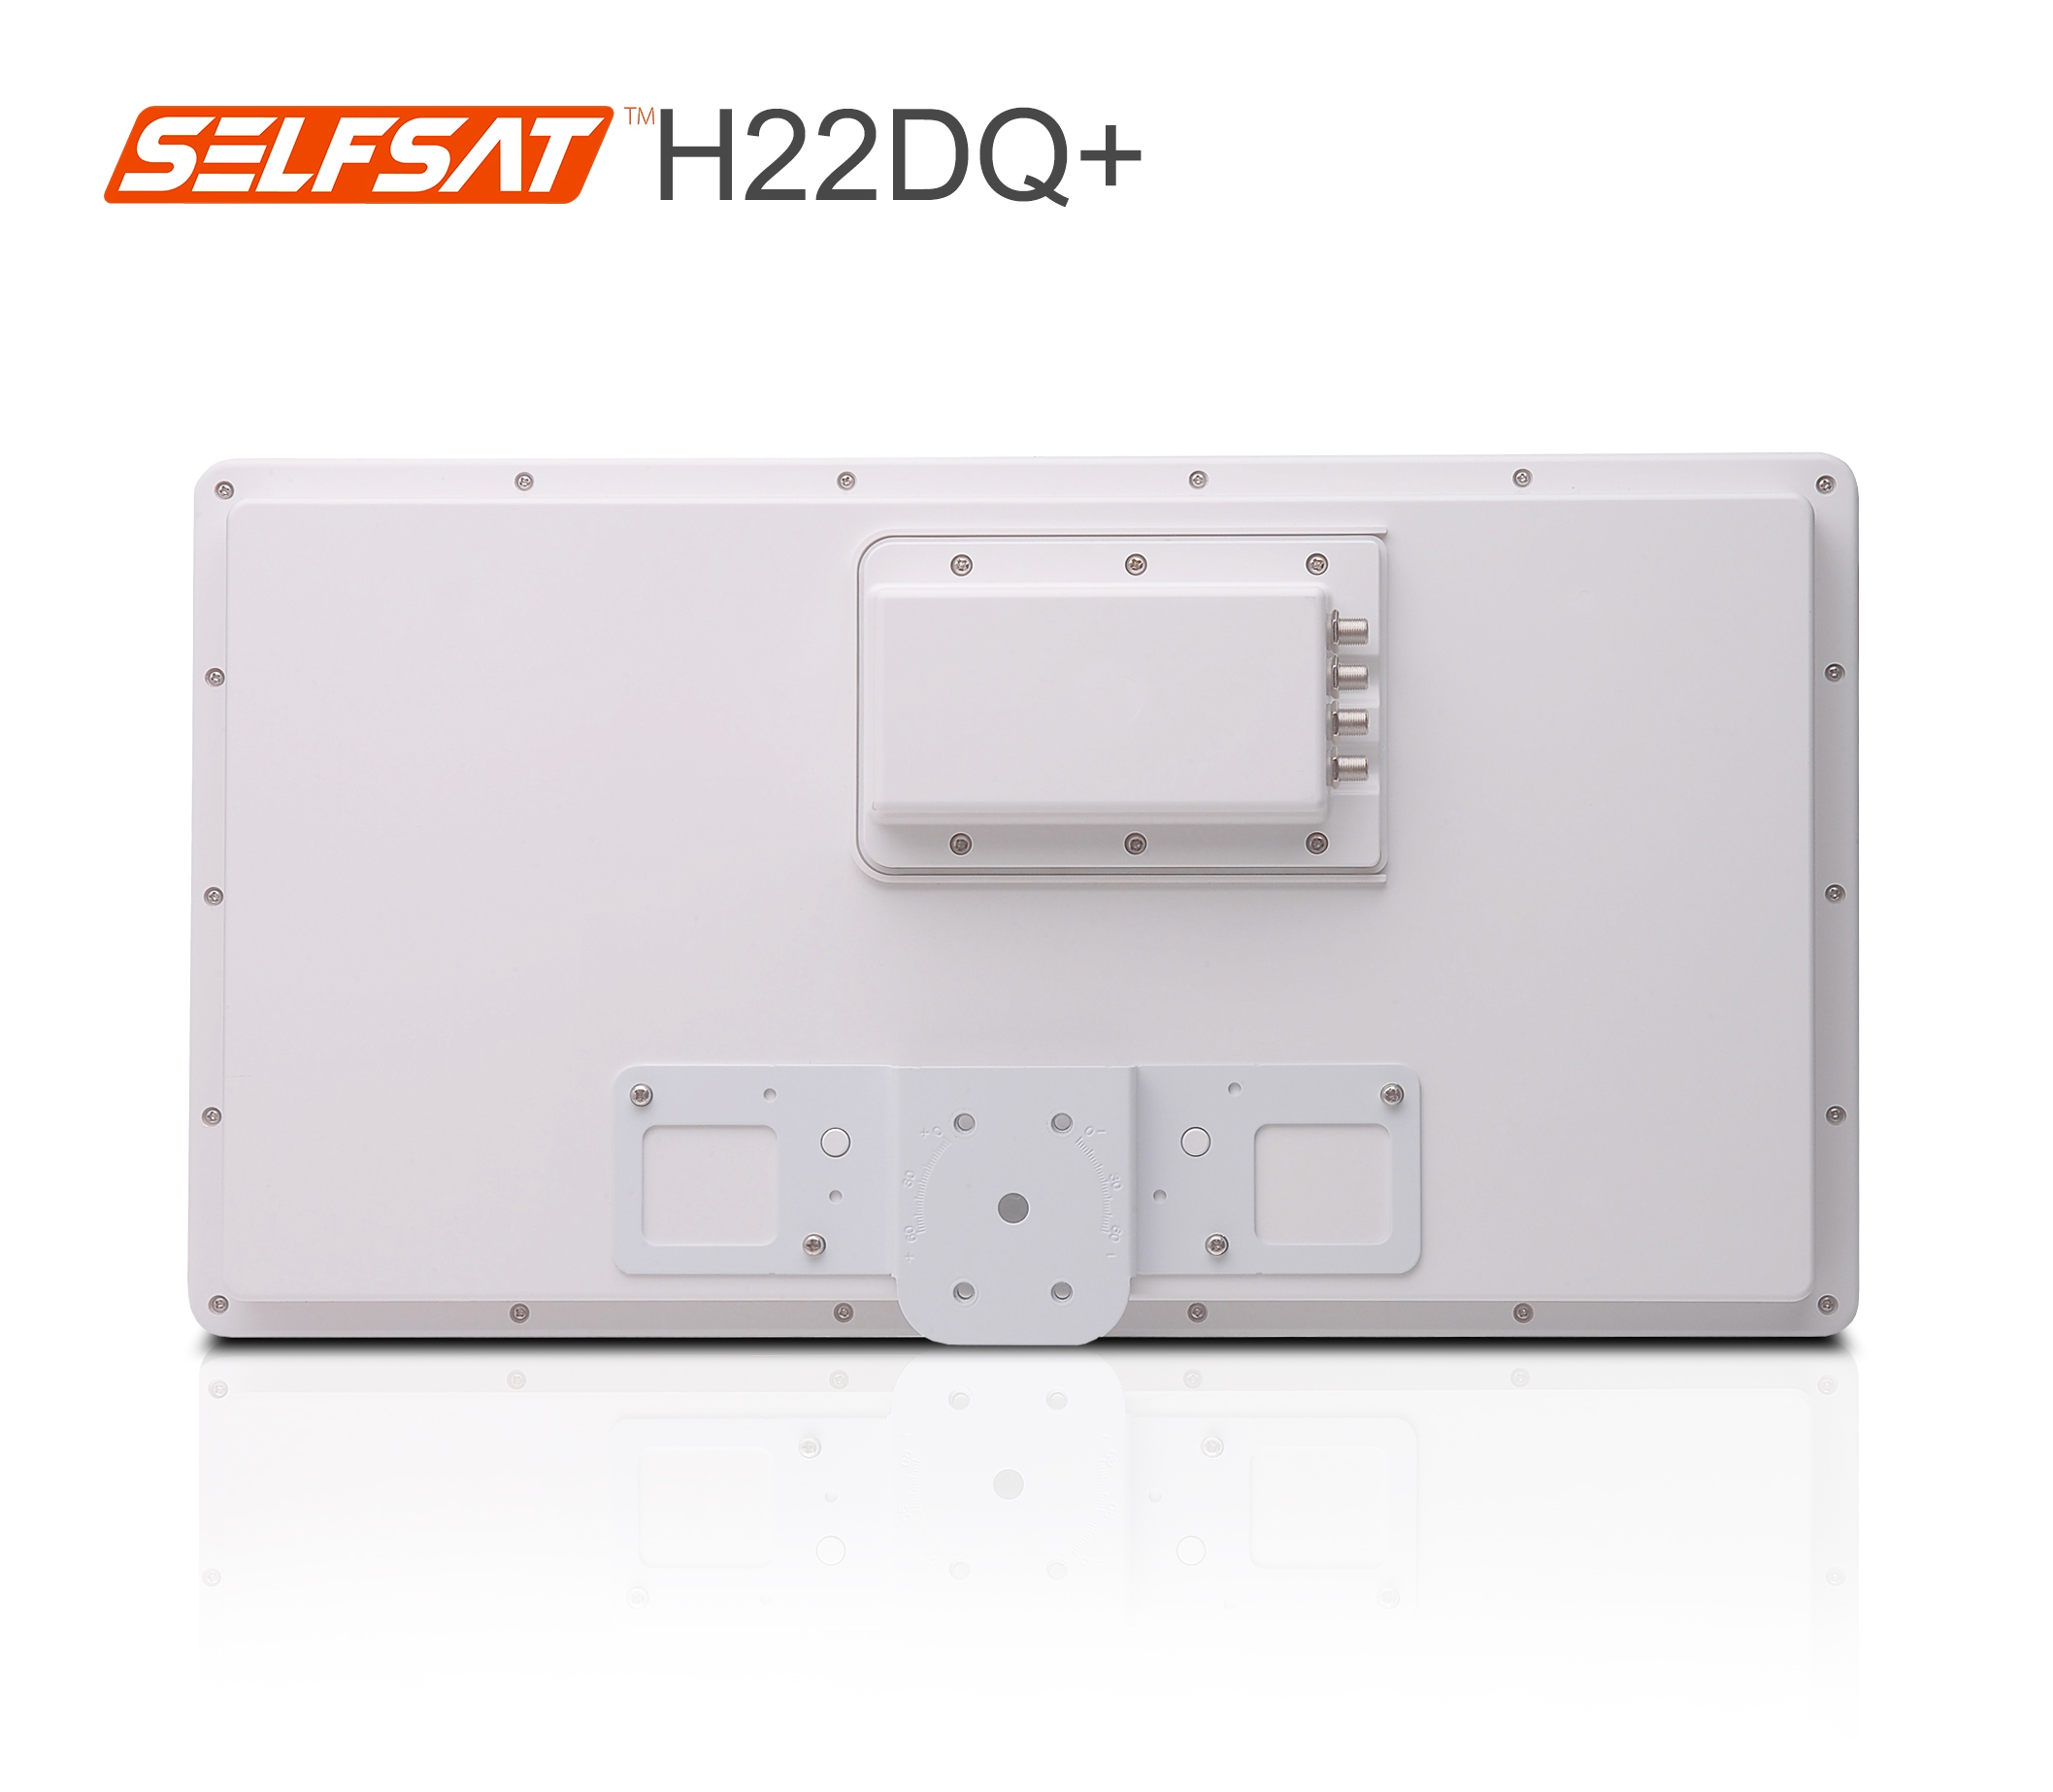 Selfsat H22DQ+ Flachantenne mit Quattro LNB